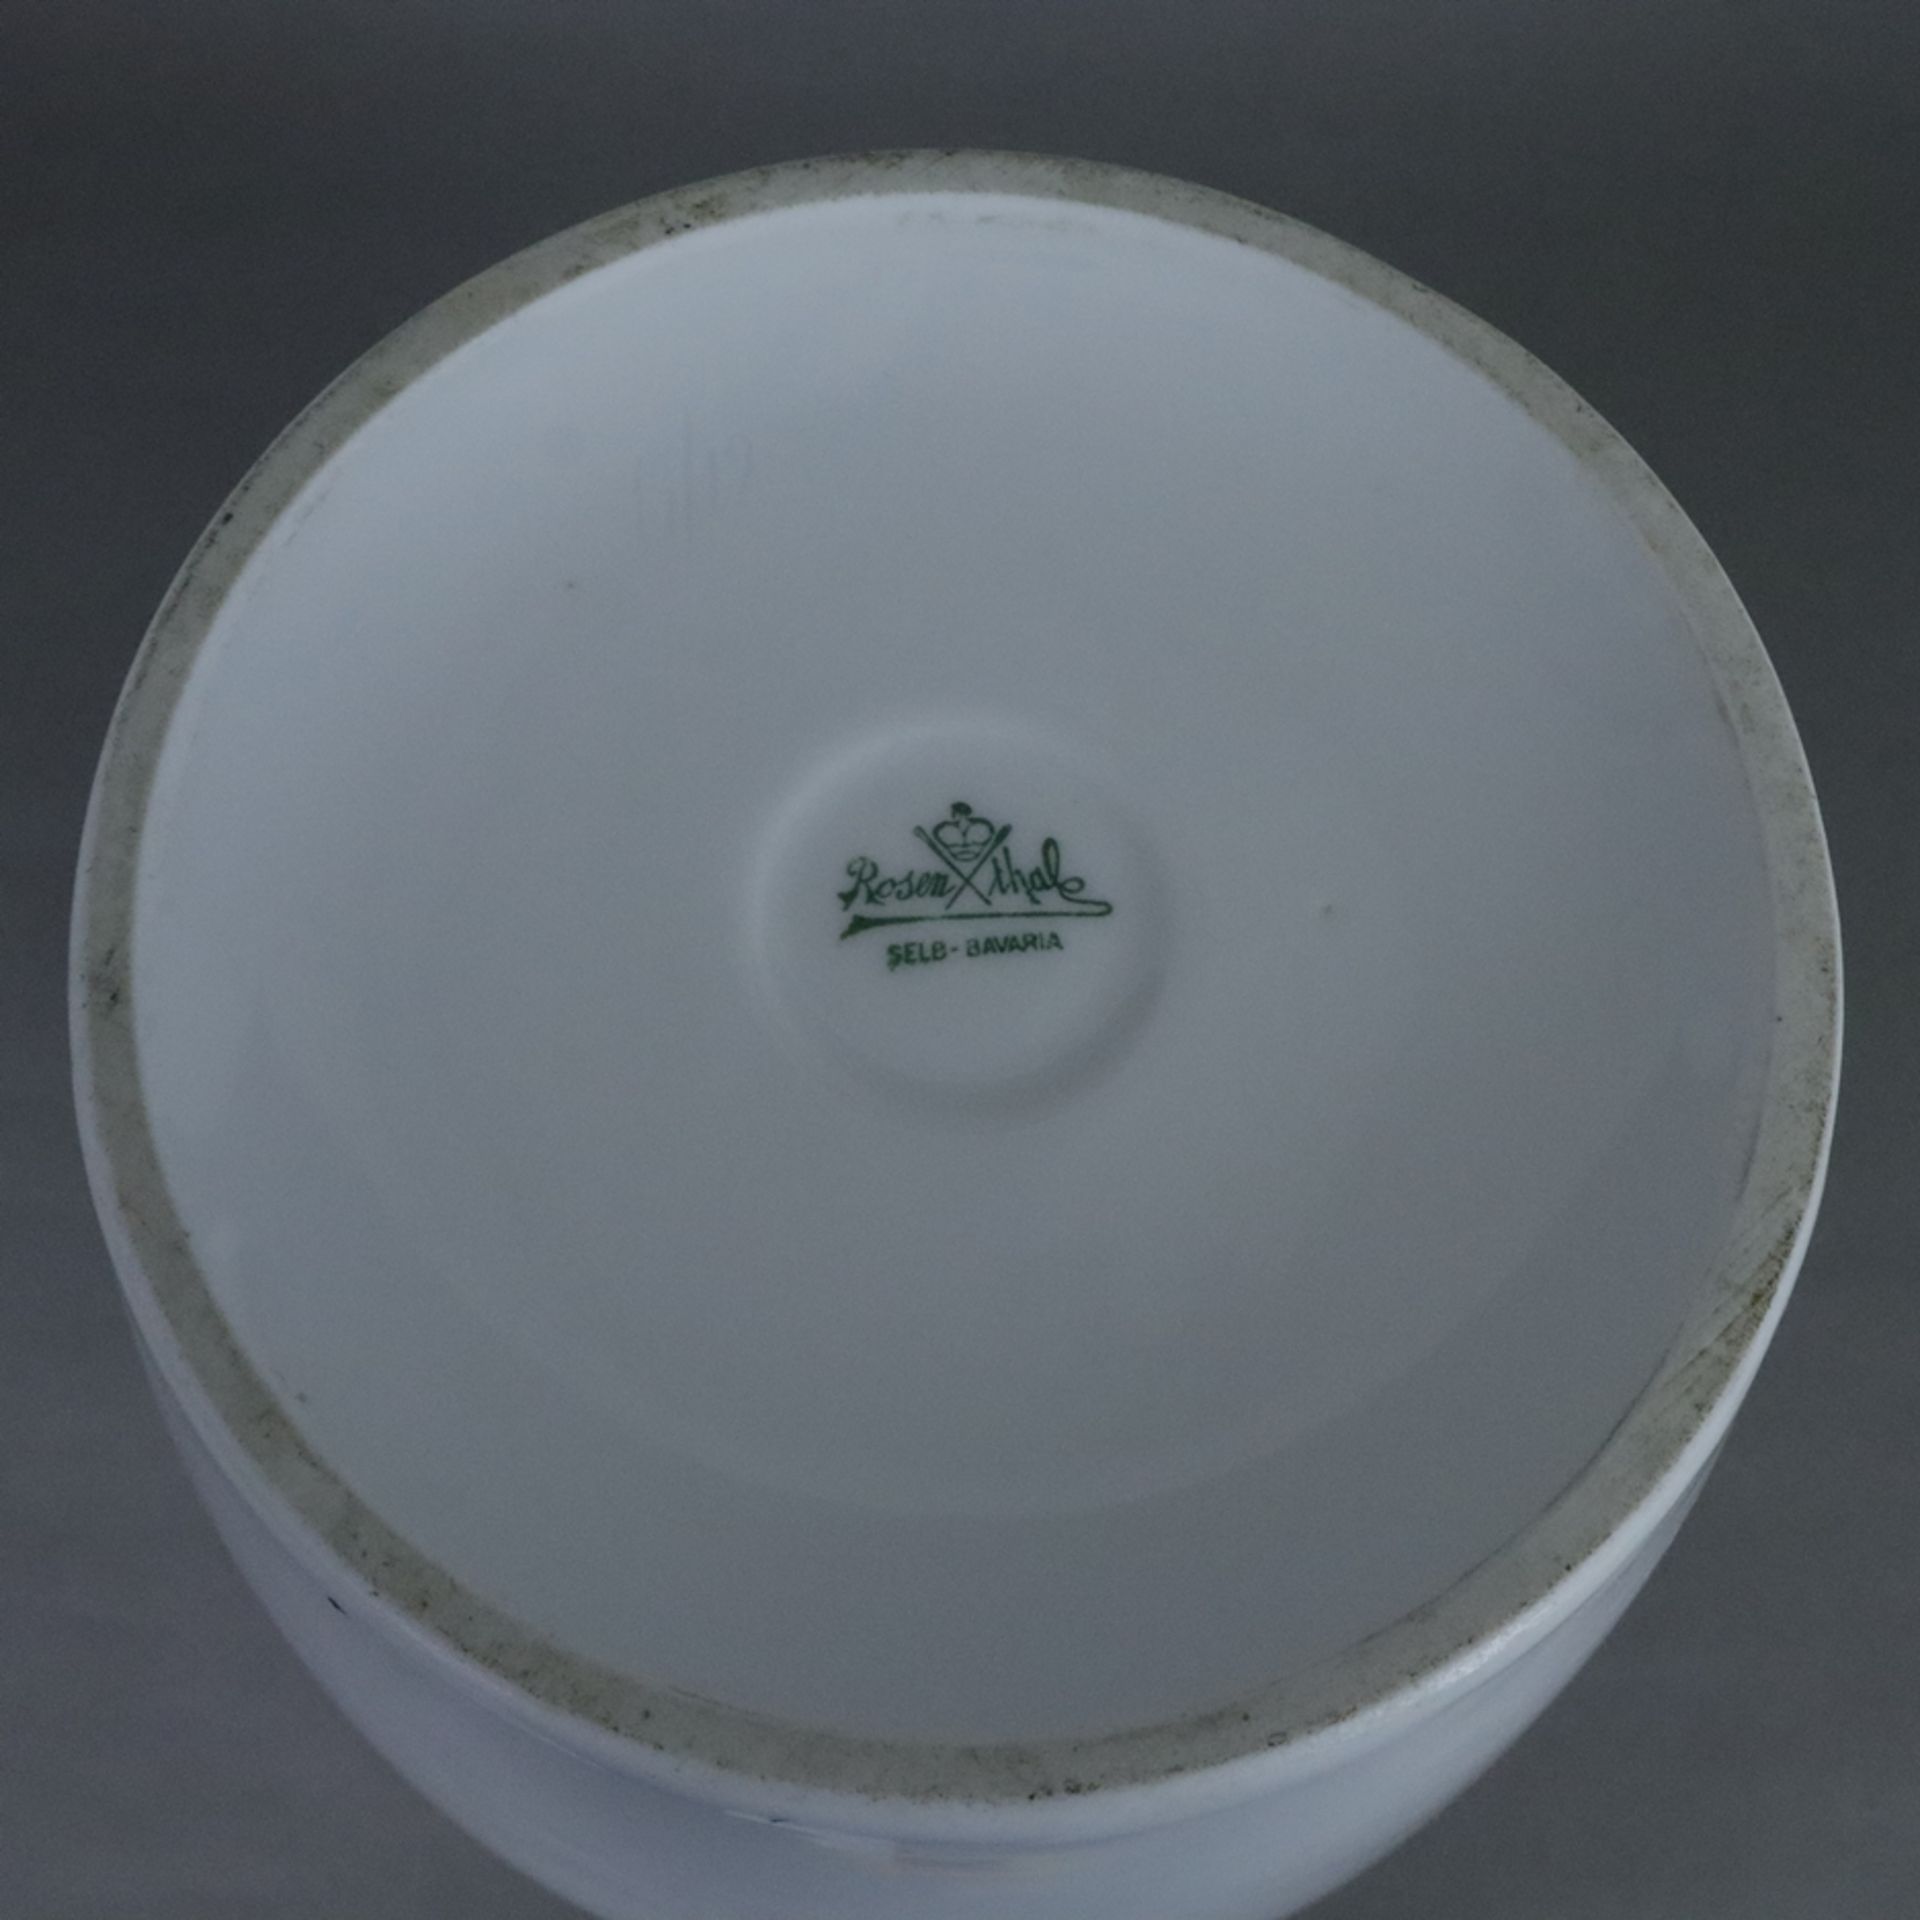 Große Balustervase - Rosenthal, Selb, schwerer Porzellanscherben, weiß, glasiert, unterseitig Manuf - Image 5 of 6